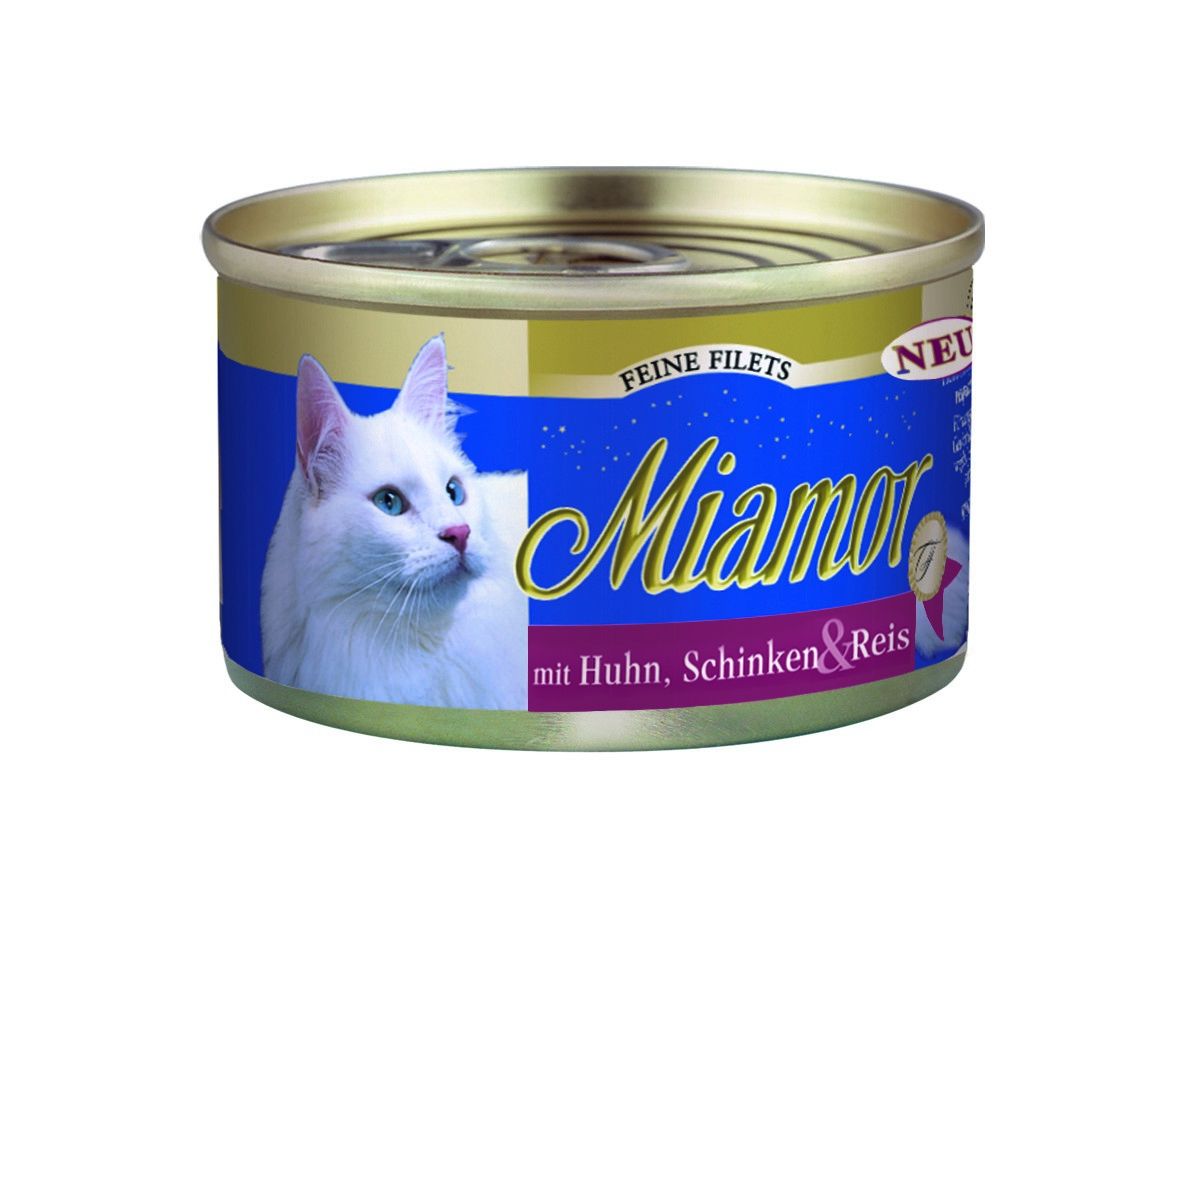 Miamor Cat Filet konzerva kuře+šunka v želé 100g Finnern Miamor